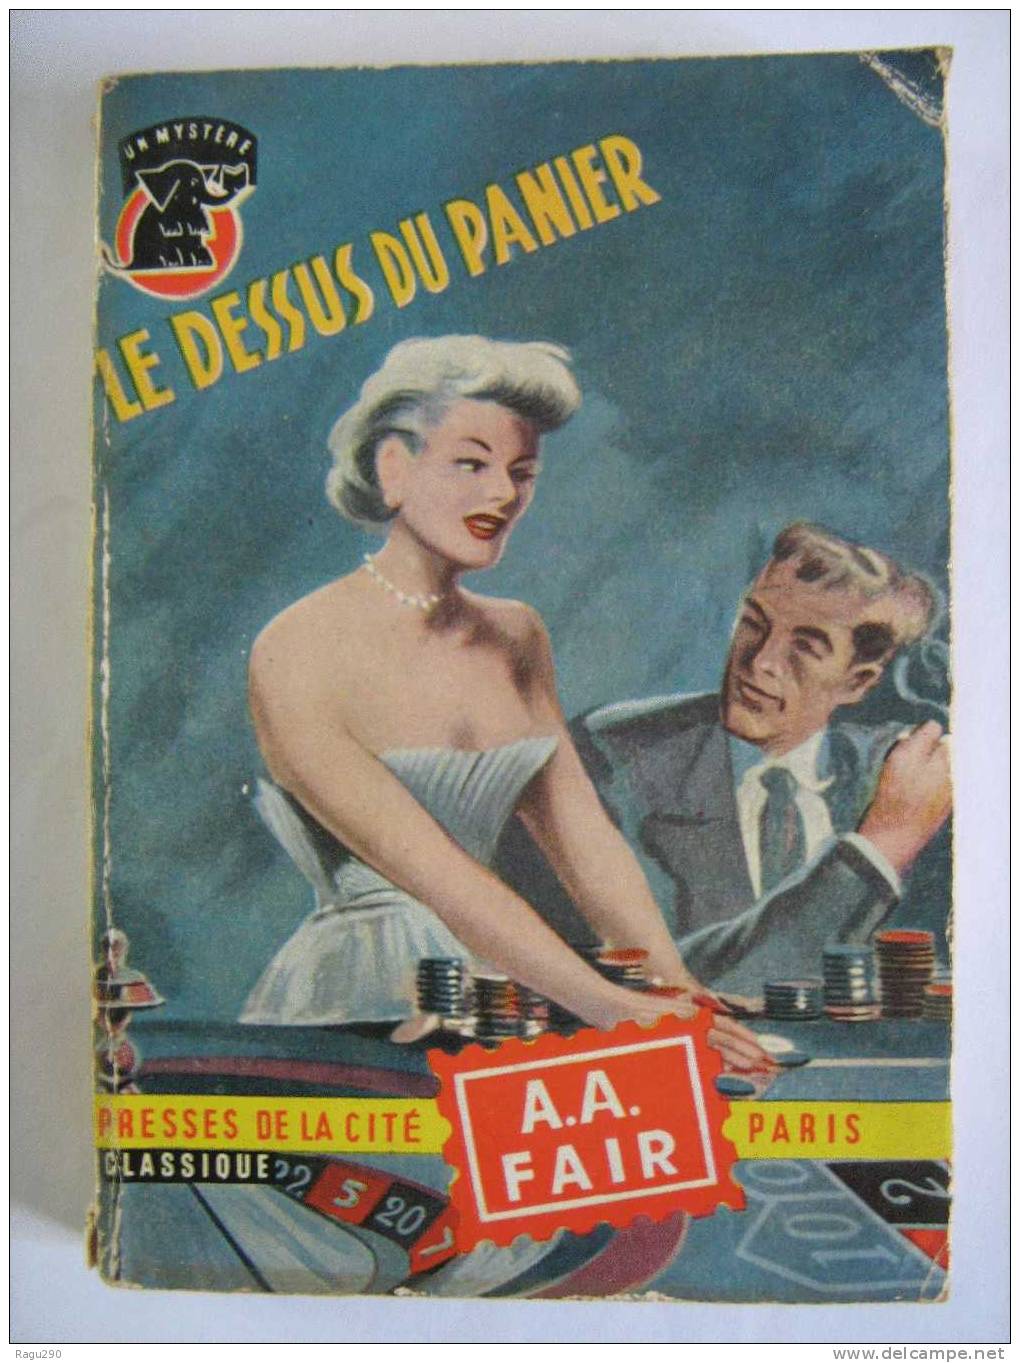 MYSTERE N° 303  LE  DESSUS  DU  PANIER    Par   A. A. FAIR    B. E. - Presses De La Cité